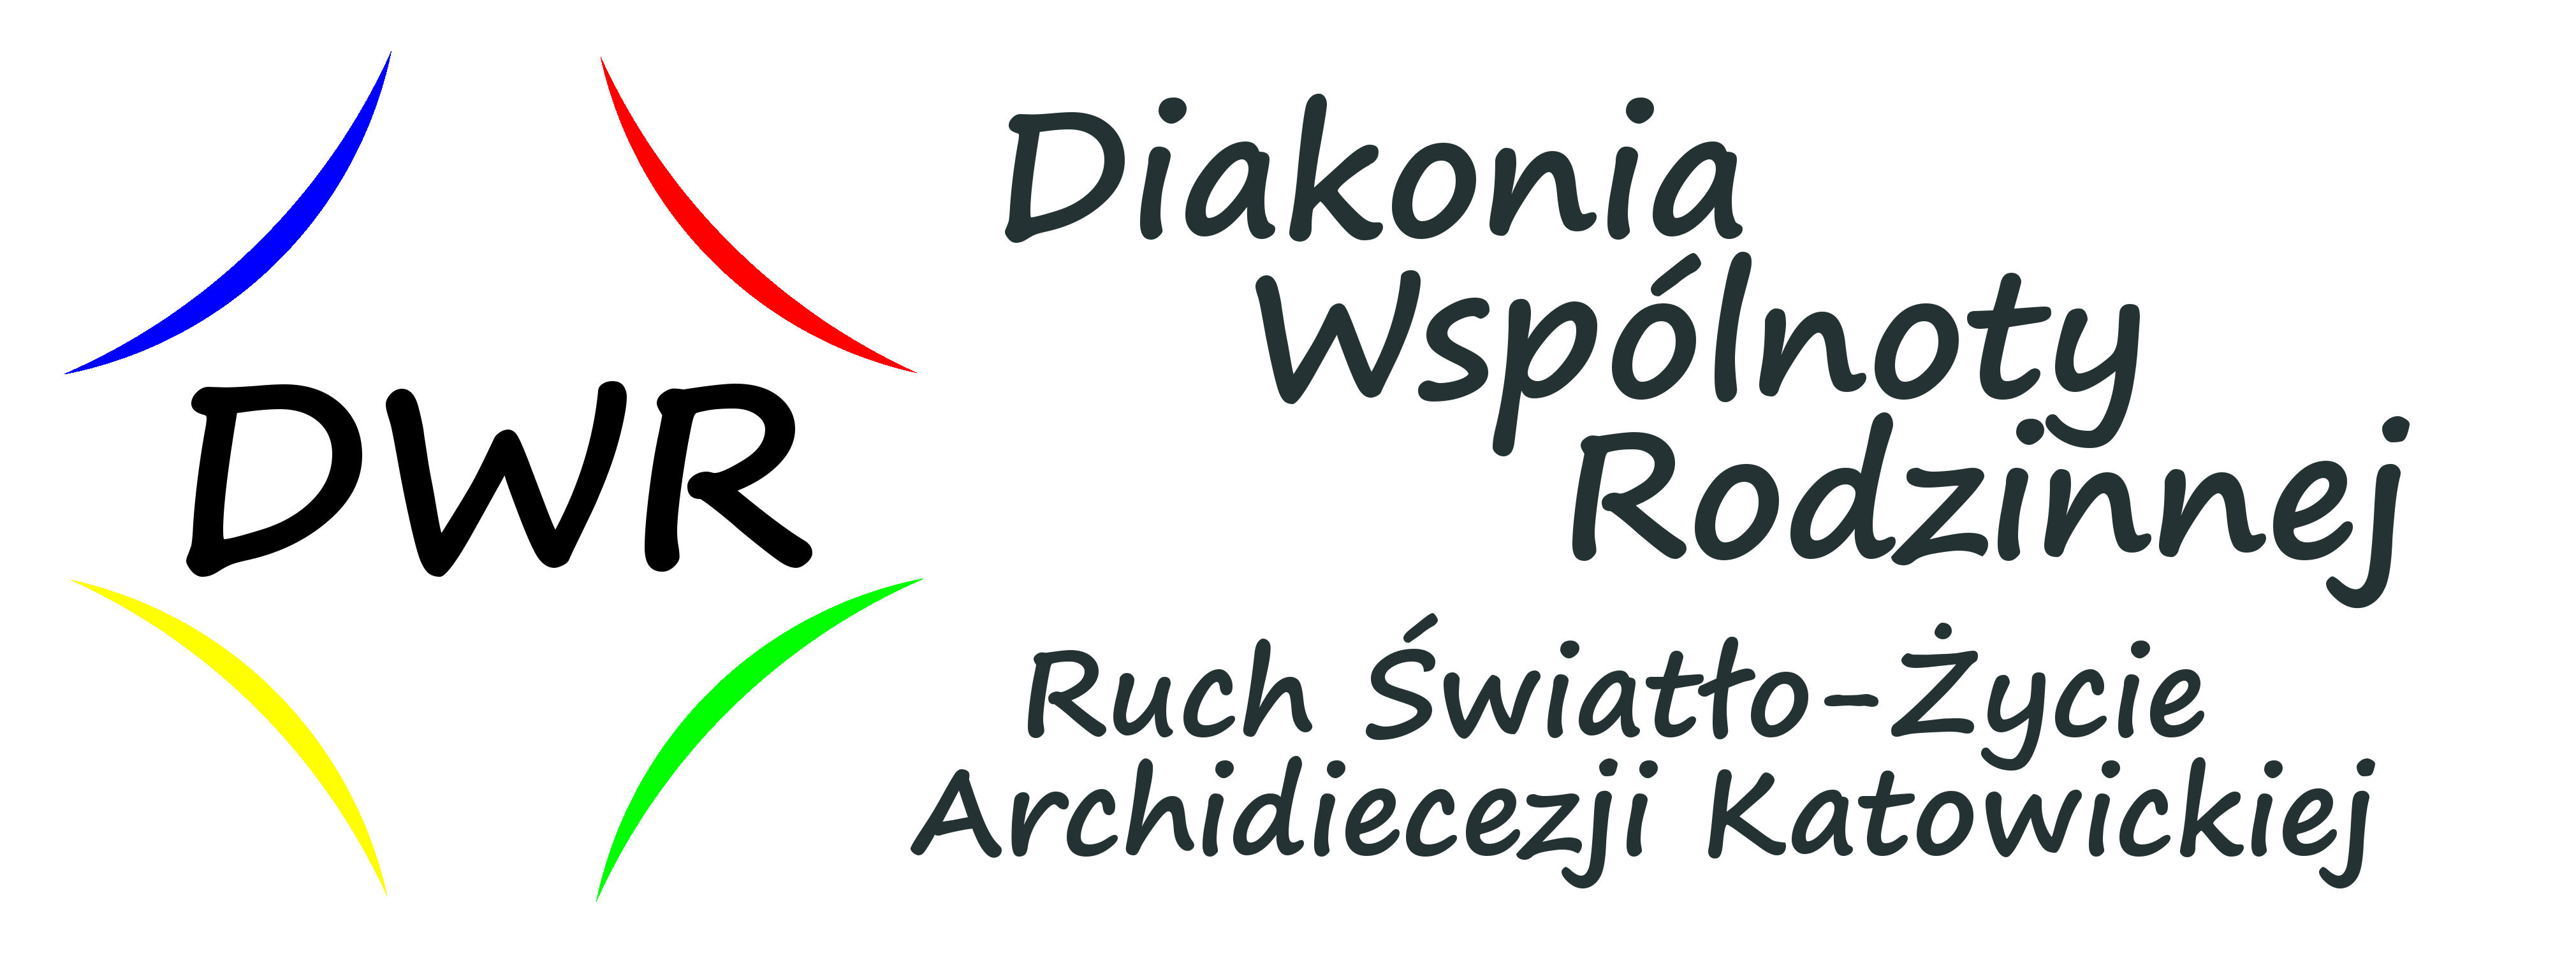 Diakonia Wspólnoty Rodzinnej Katowice